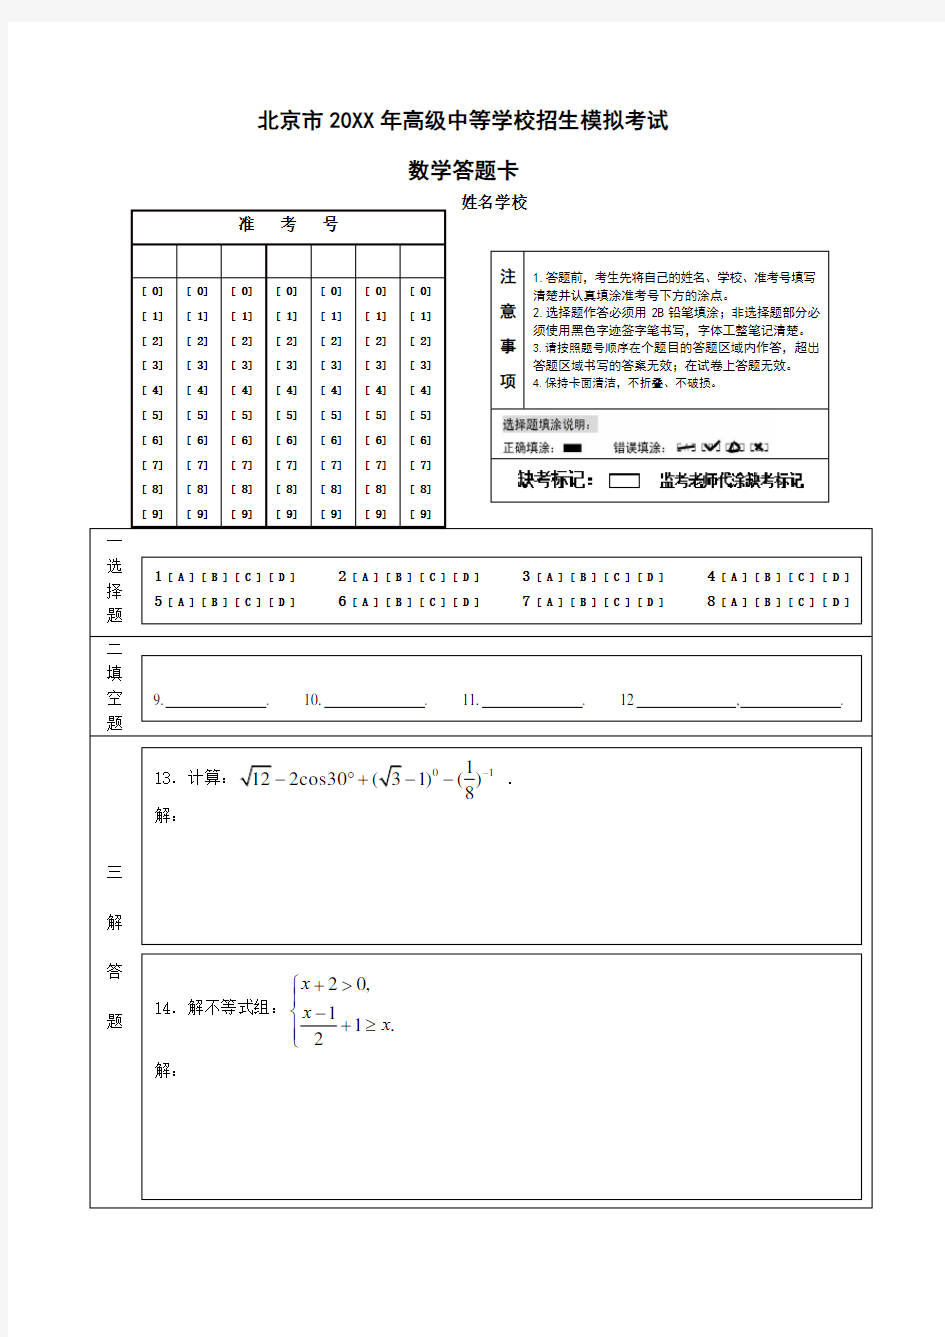 中考数学答题卡模板(A4版)